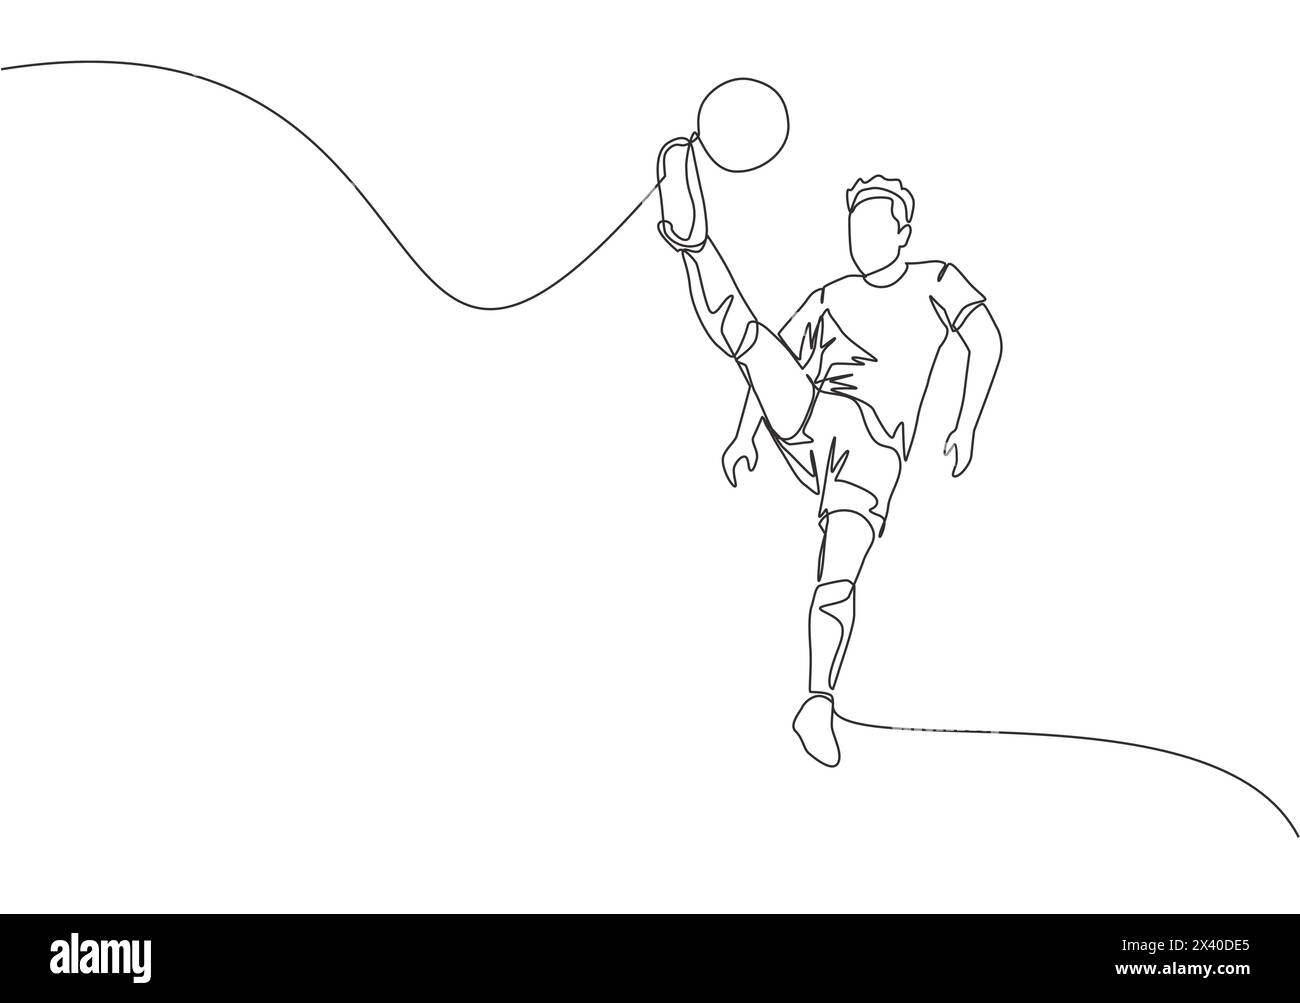 Un'unica linea di un giovane giocatore felice di calcio con maglia a manica corta che calcia la palla mentre salta. Concetto di sport per partite di calcio. Cont Illustrazione Vettoriale